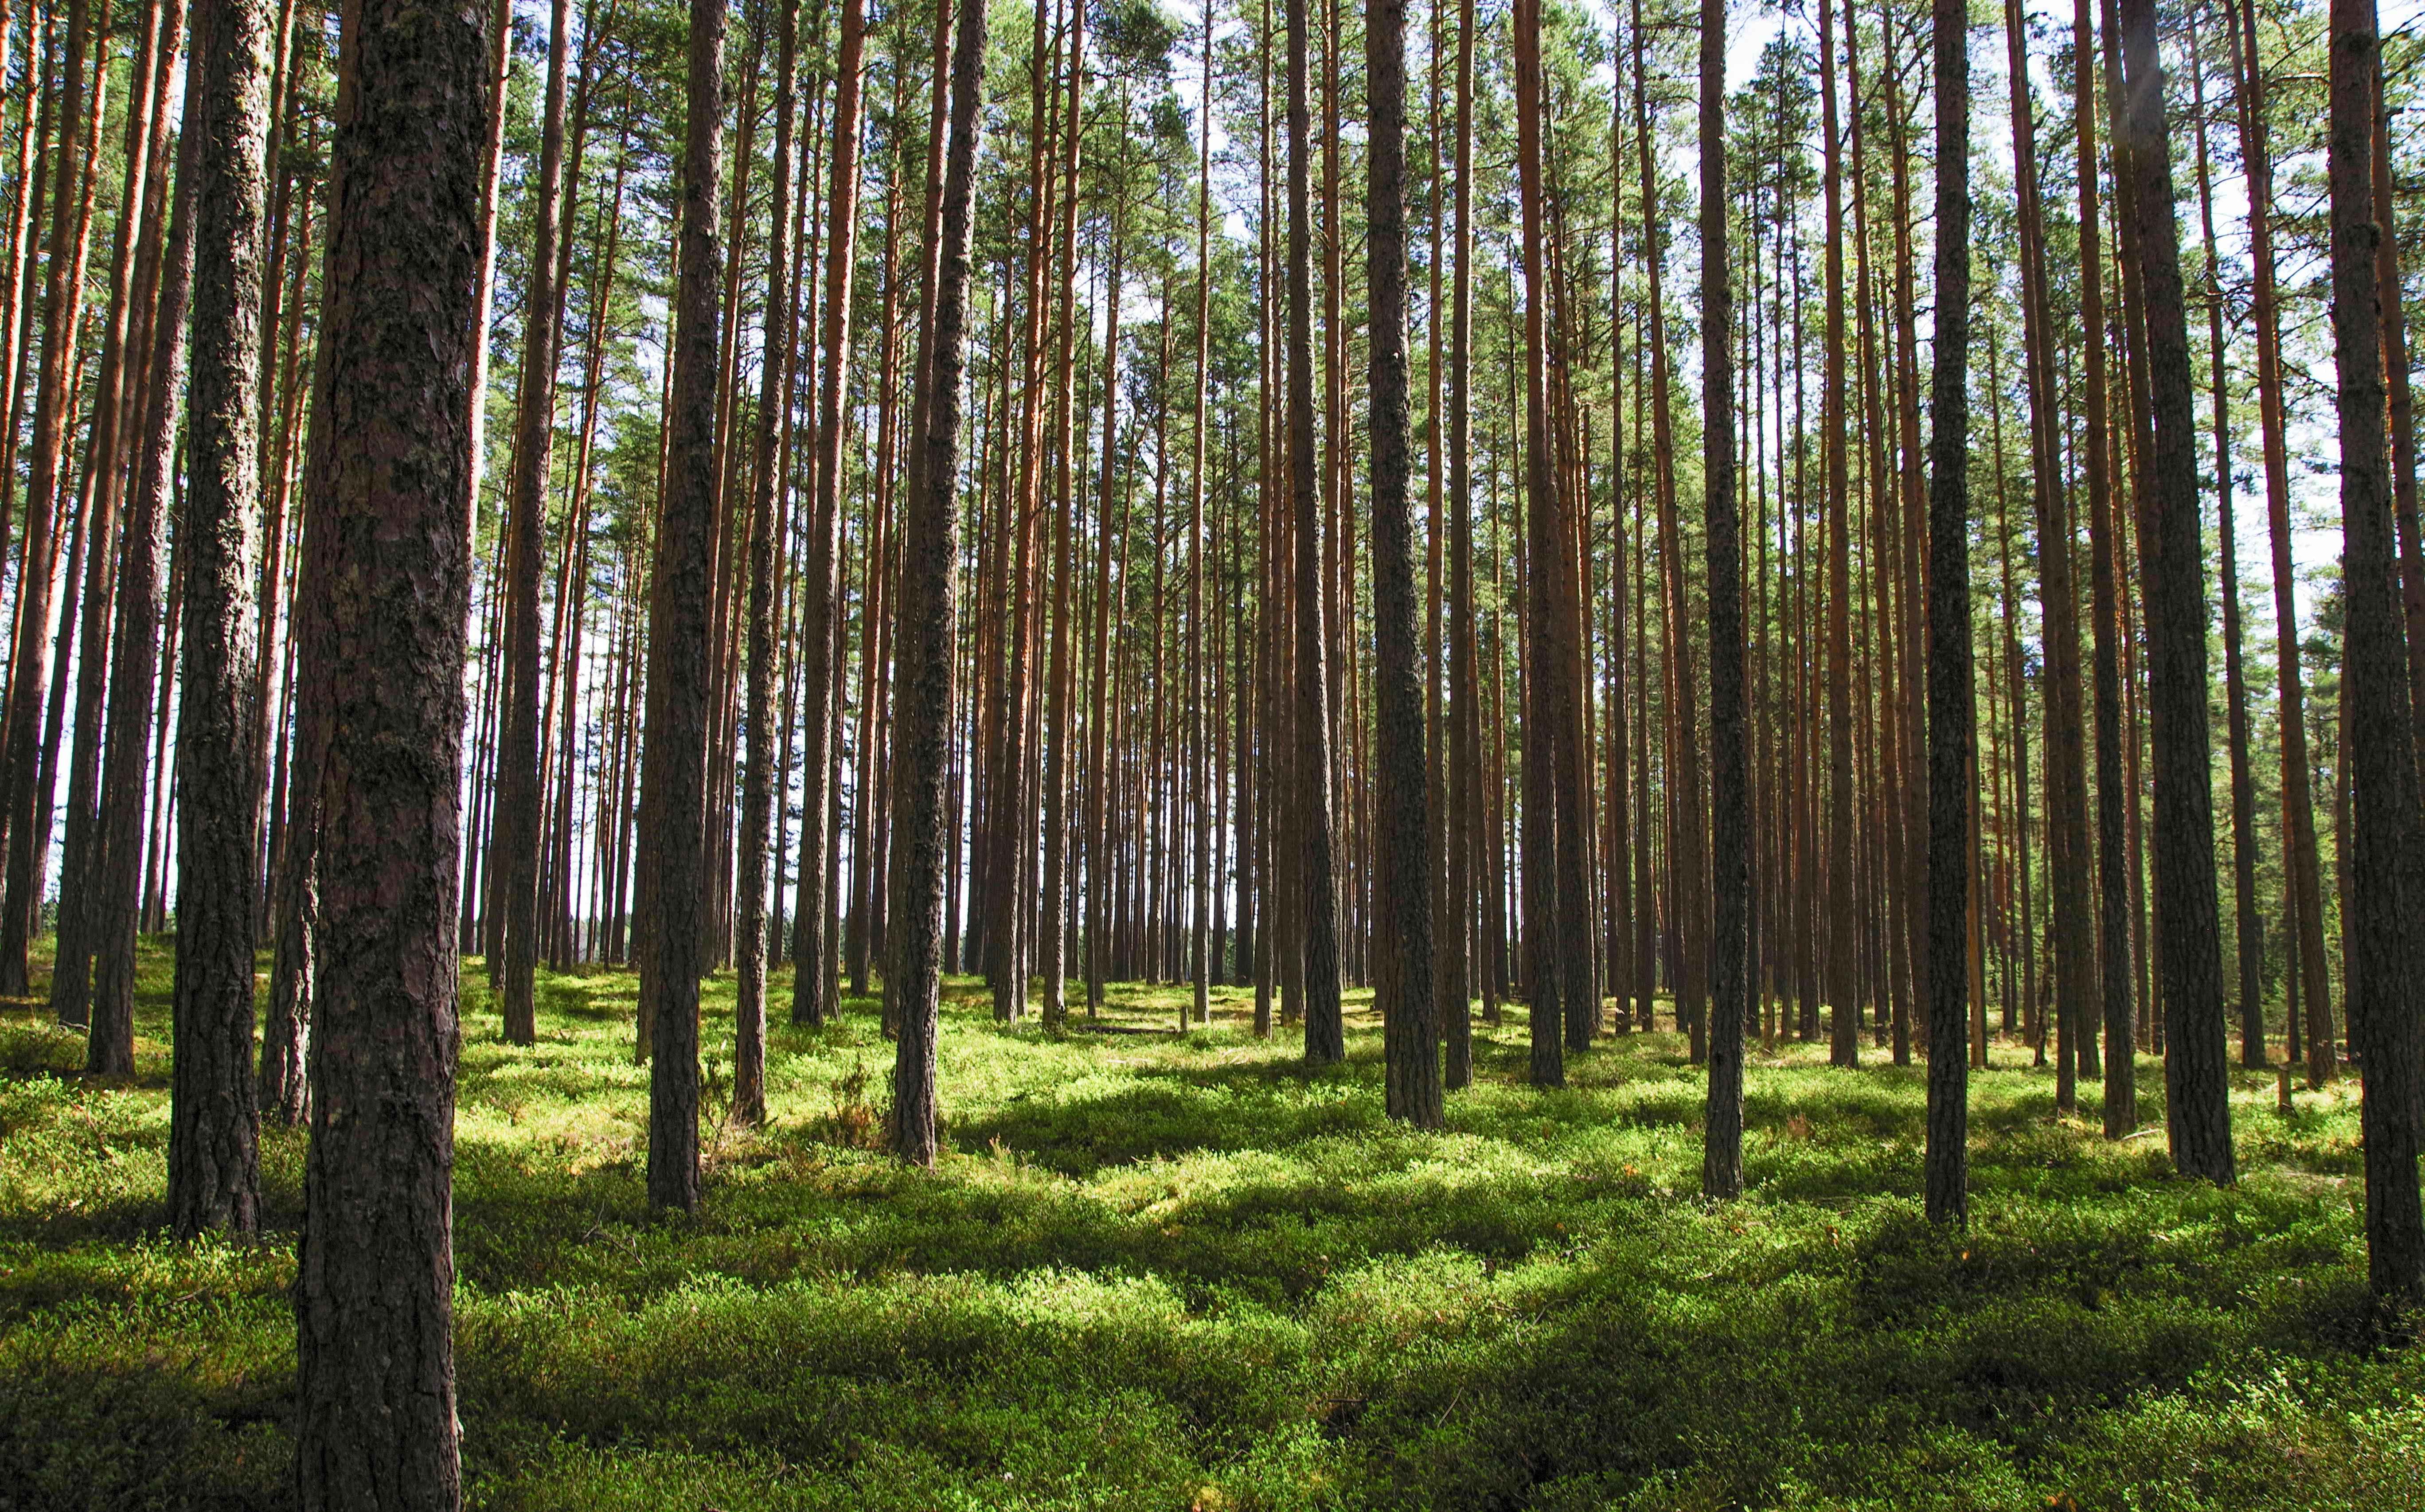 Wallonie : un 4ème appel à projets "Forêt résiliente" est lancé